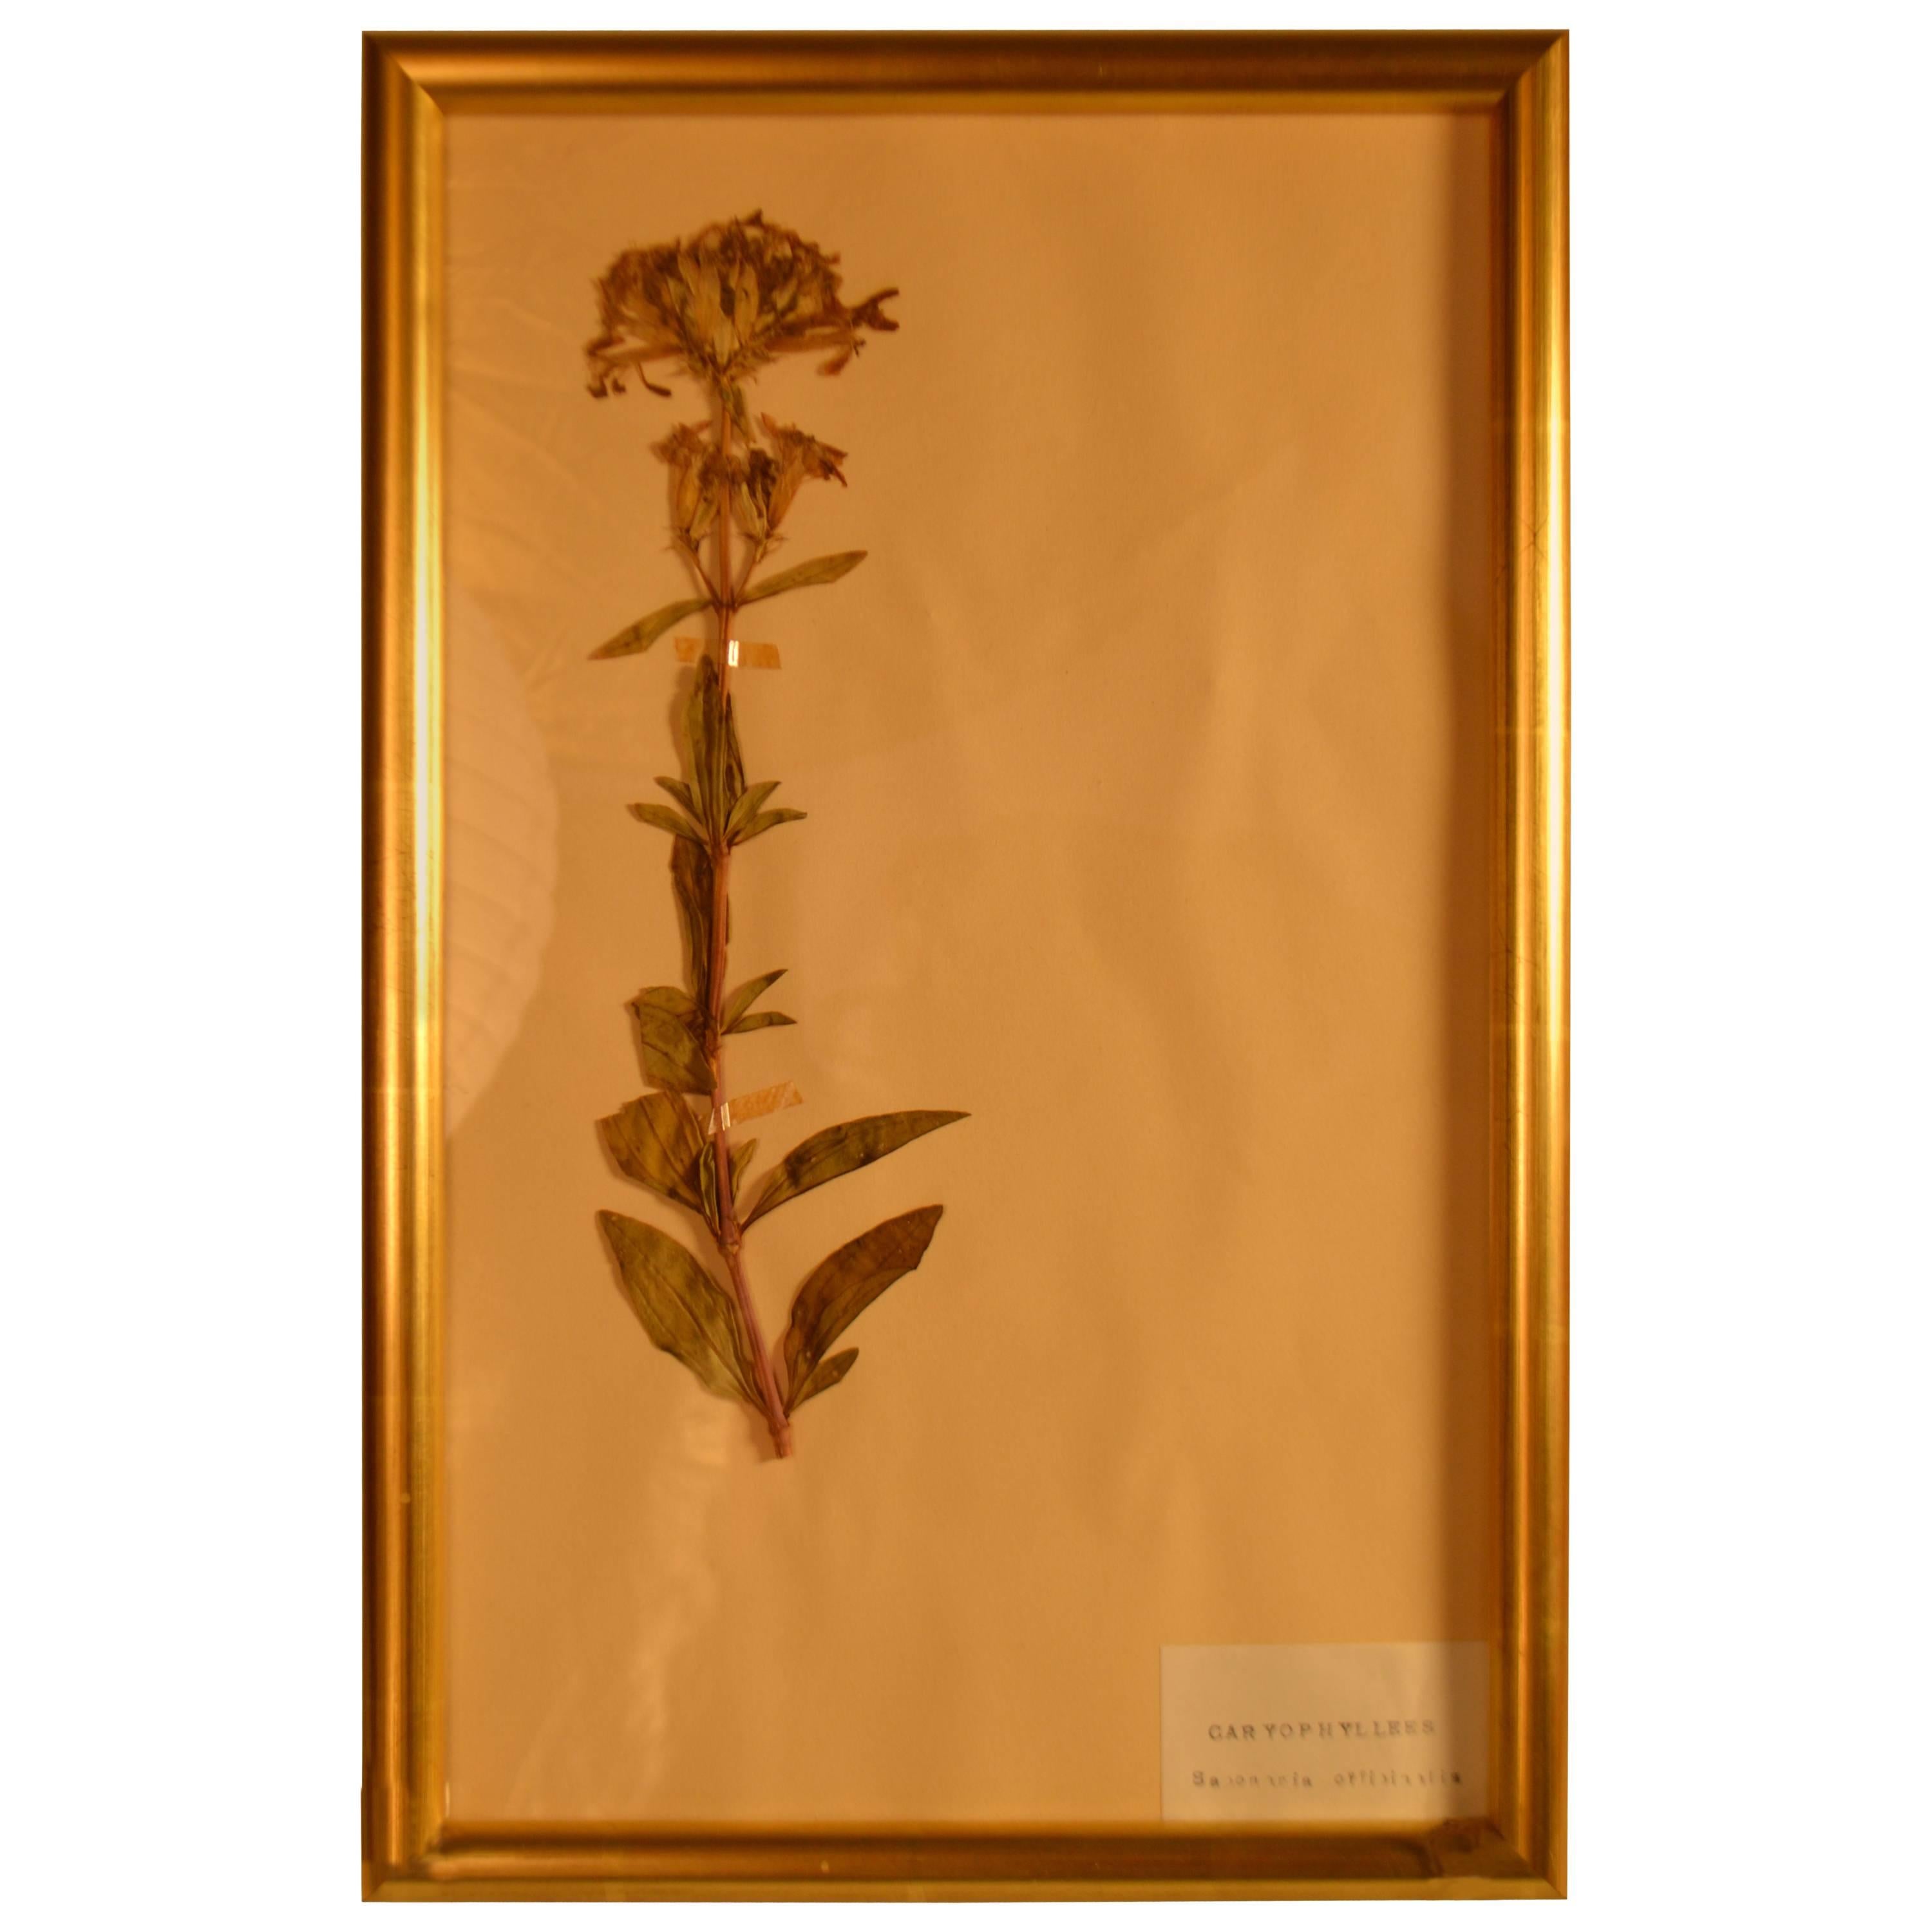 Framed Herbier in New Gold Leaf Frame